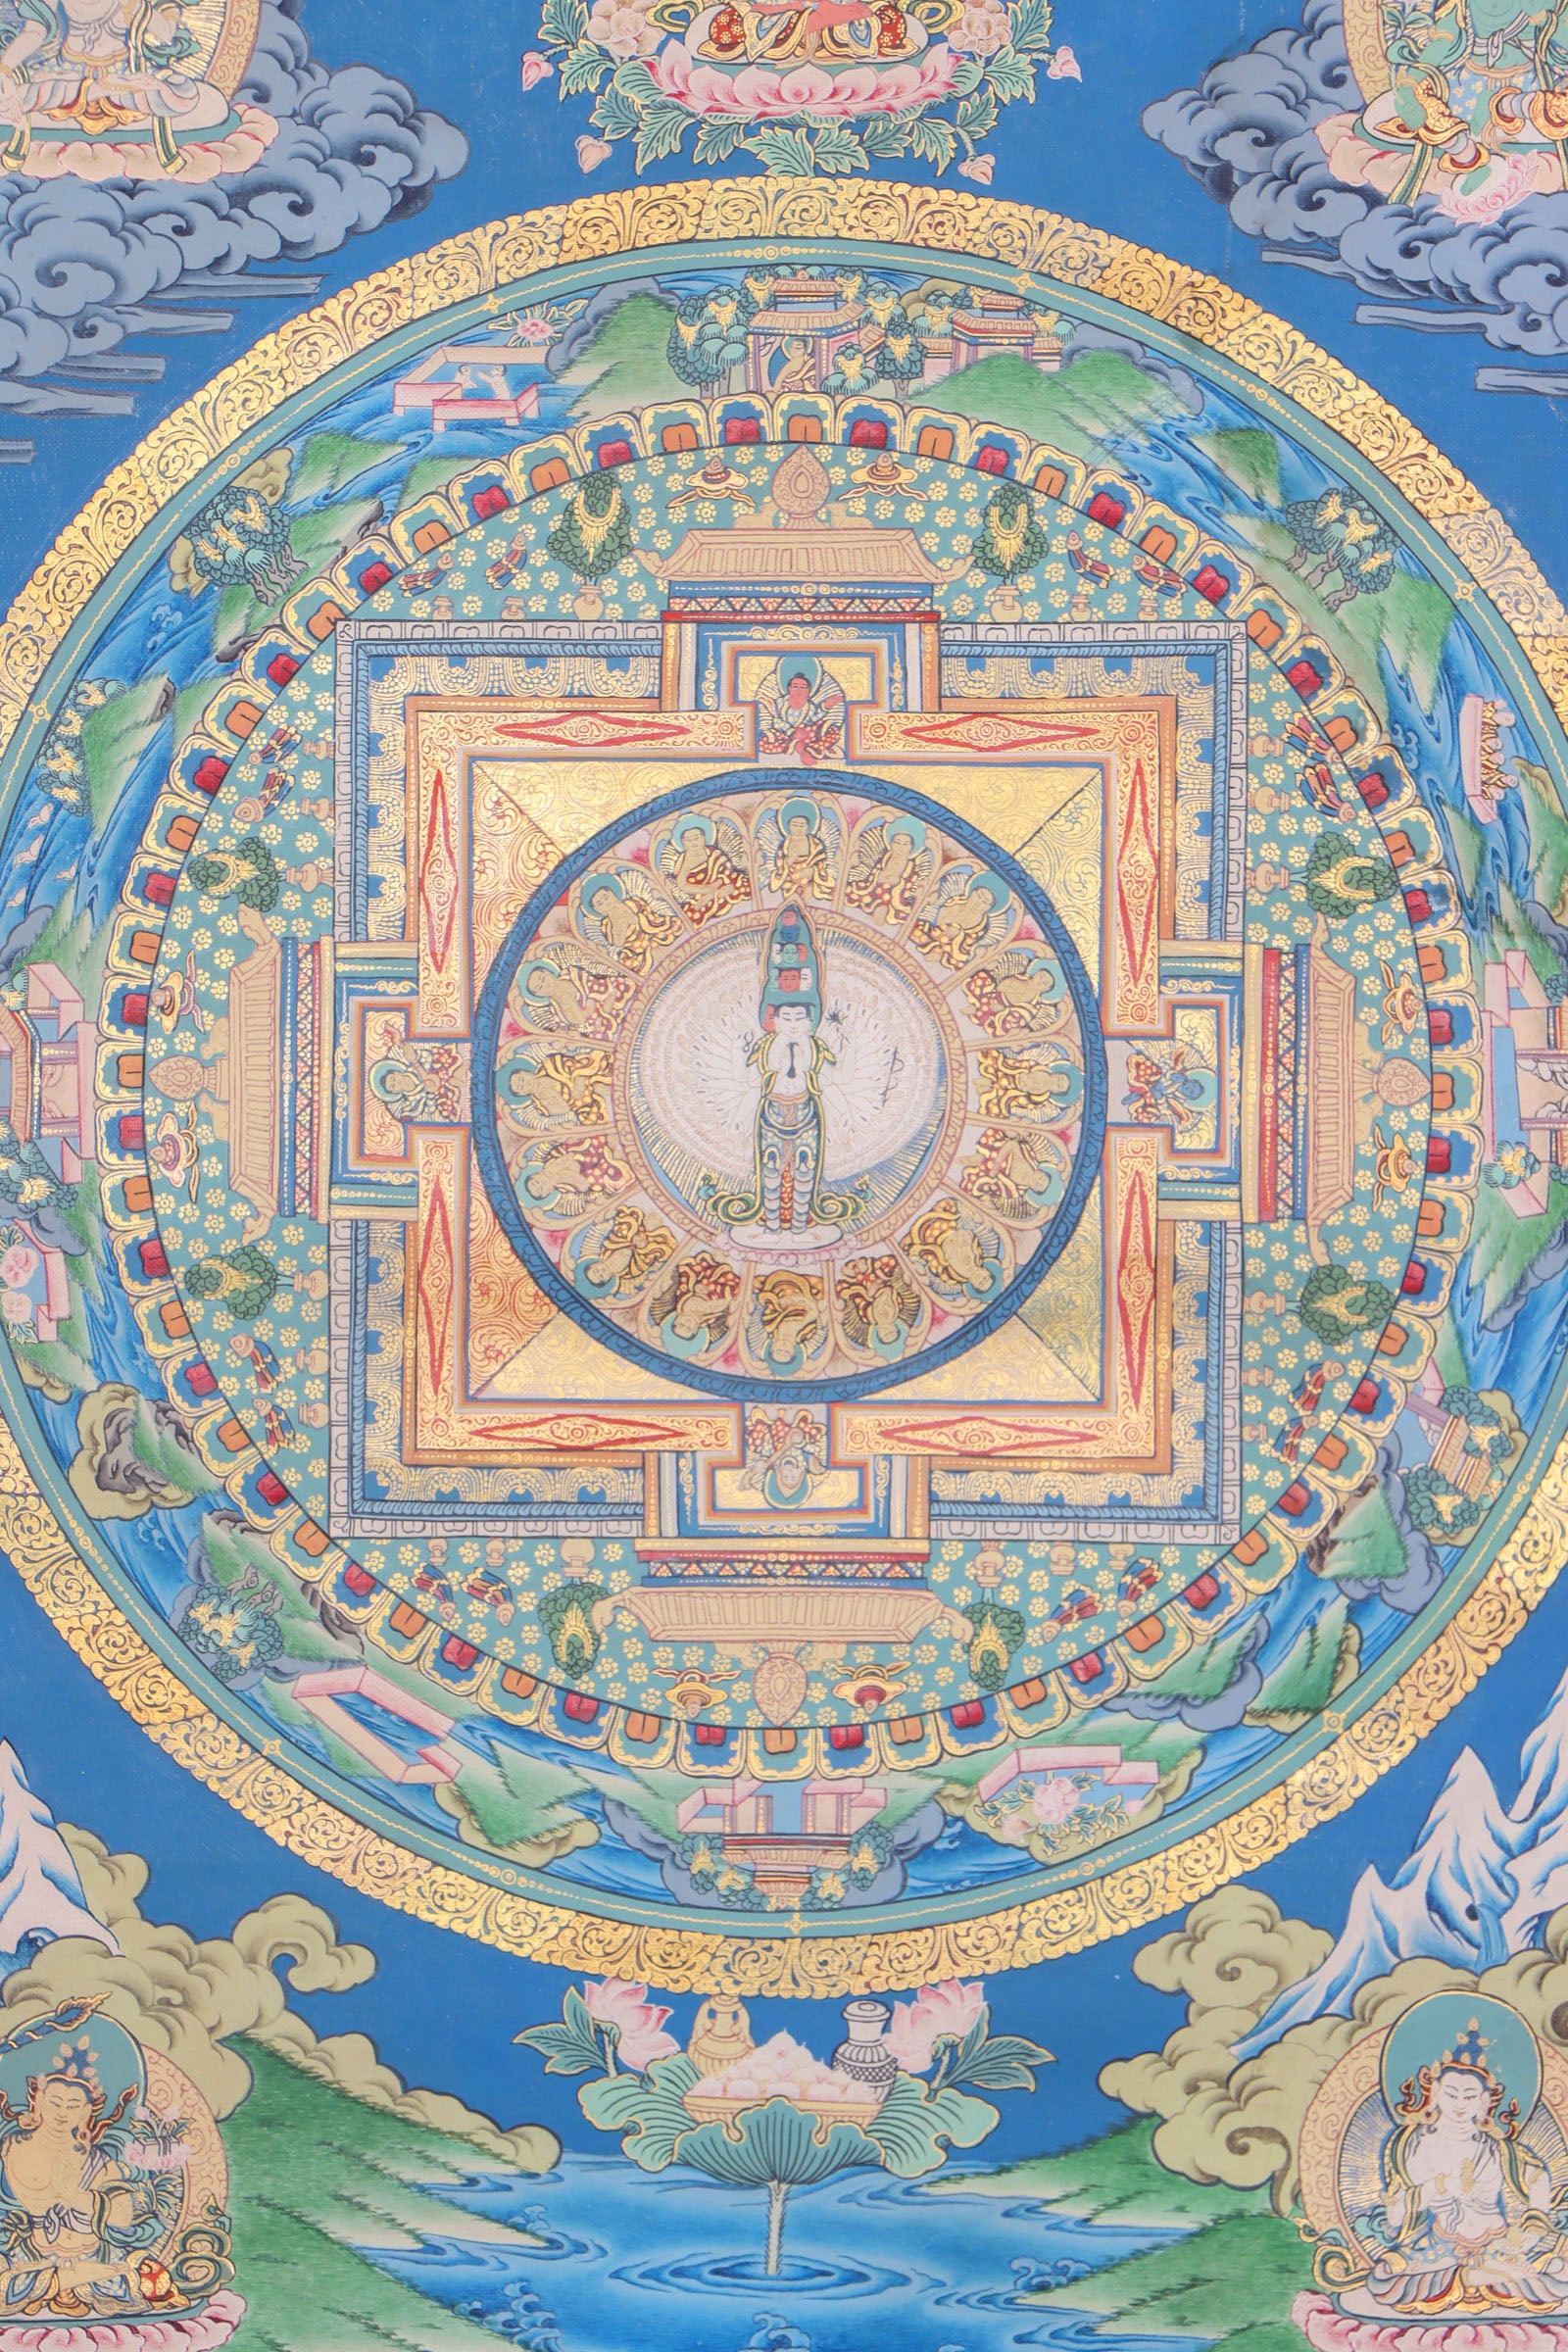 Lokeshwor Mandala Thangka for wall decor and spirituality.